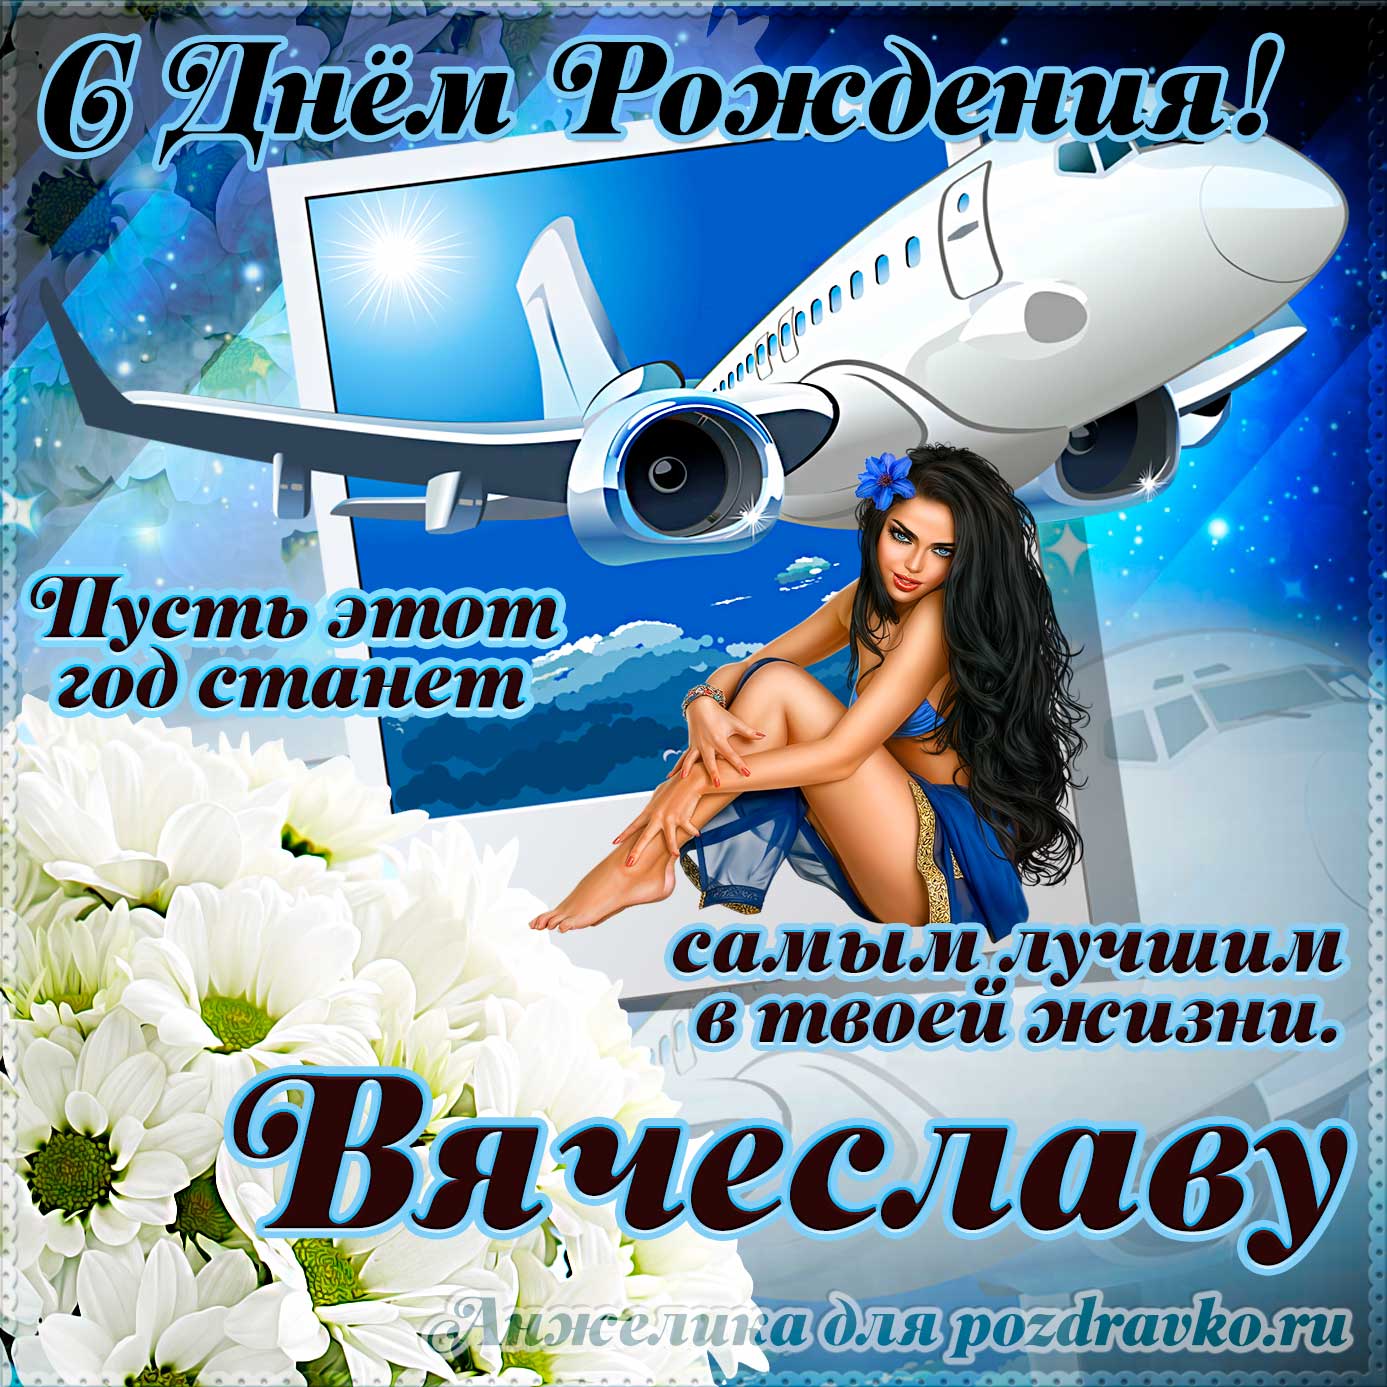 Открытка - Вячеславу на день рождения с красивым пожеланием самолетом и девушкой. Скачать бесплатно или отправить картинку.